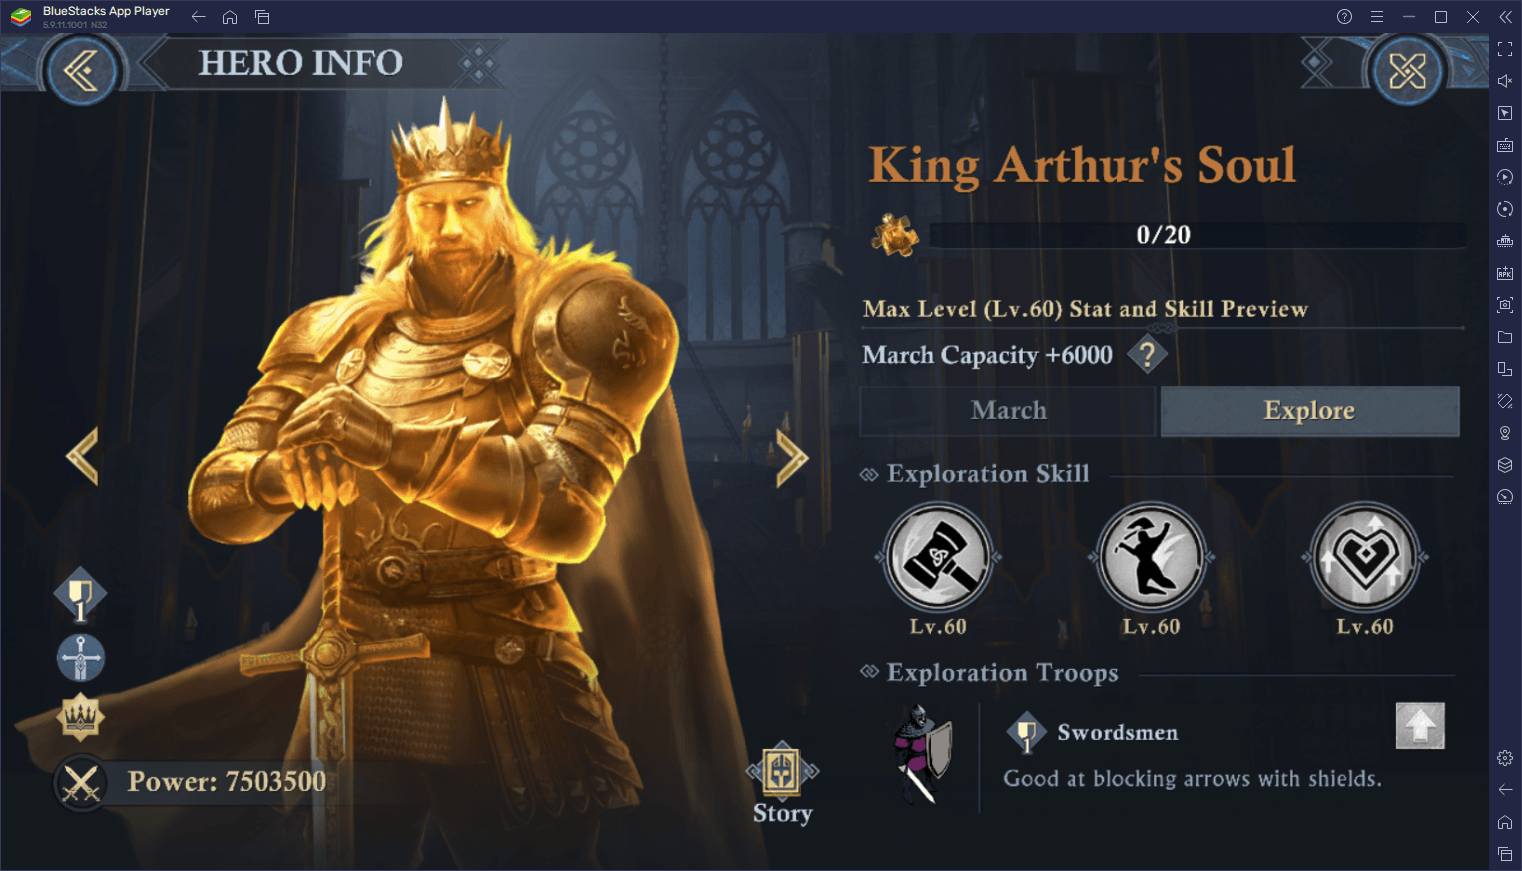 King of Avalon Tierliste mit den besten Helden im Spiel